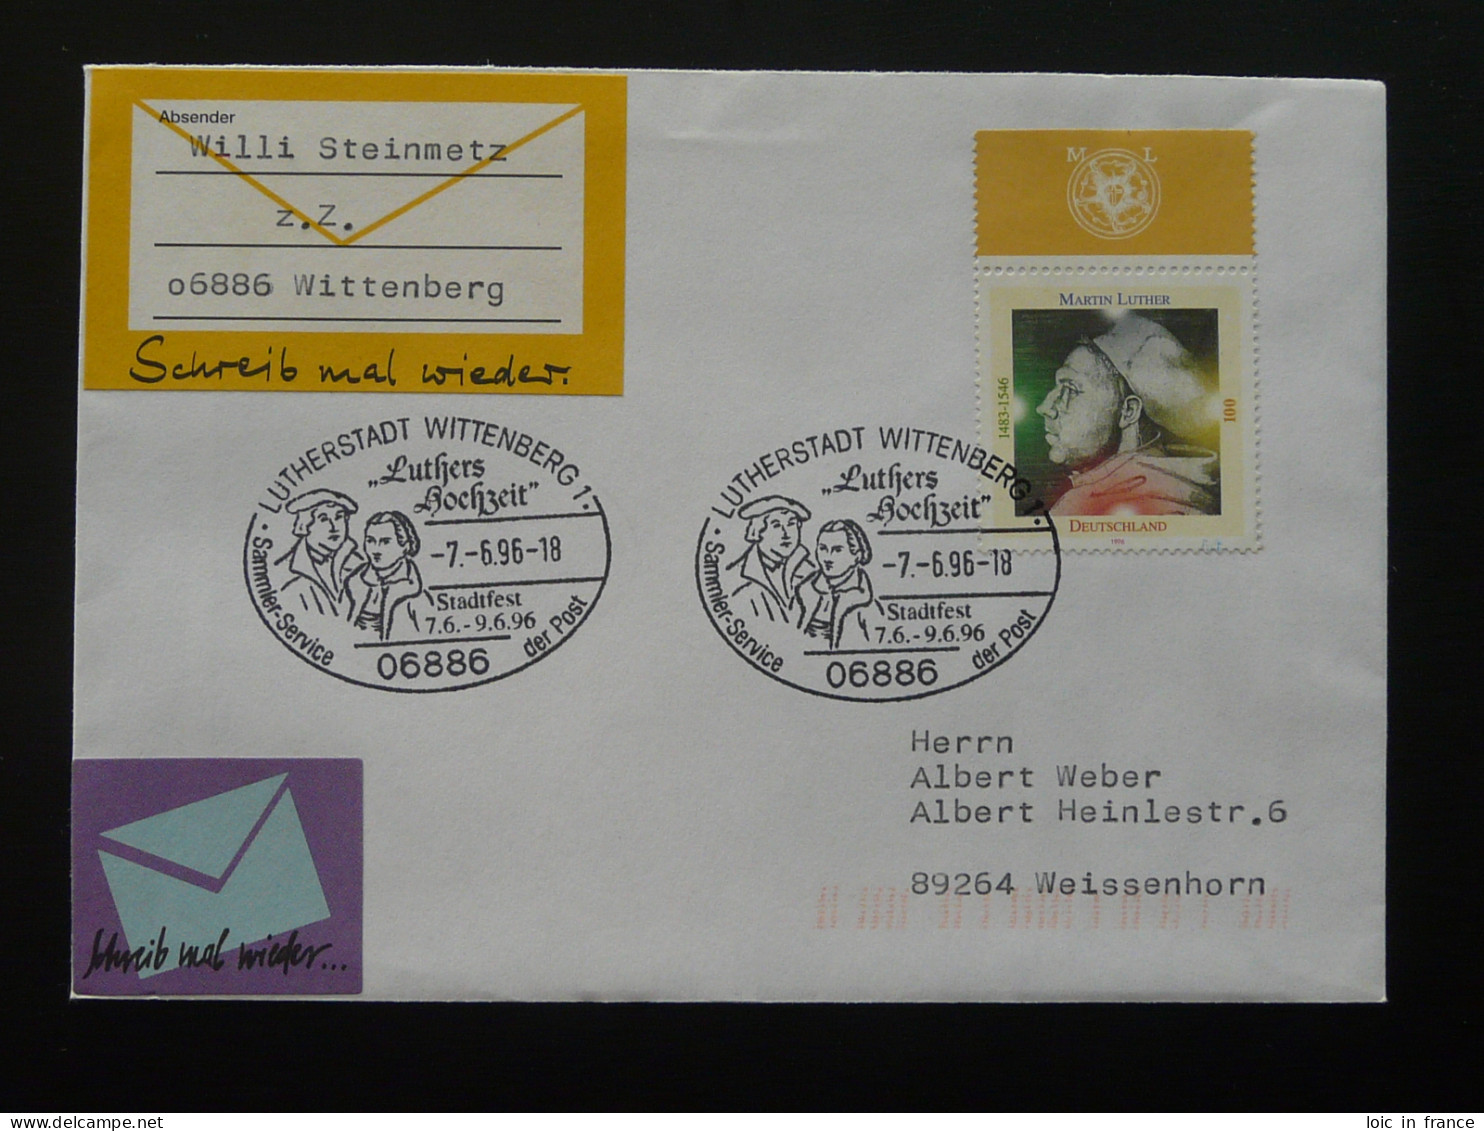 Martin Luther Oblitération Sur Lettre Postmark On Cover Wittenberg Allemagne Germany 1996 - Theologen